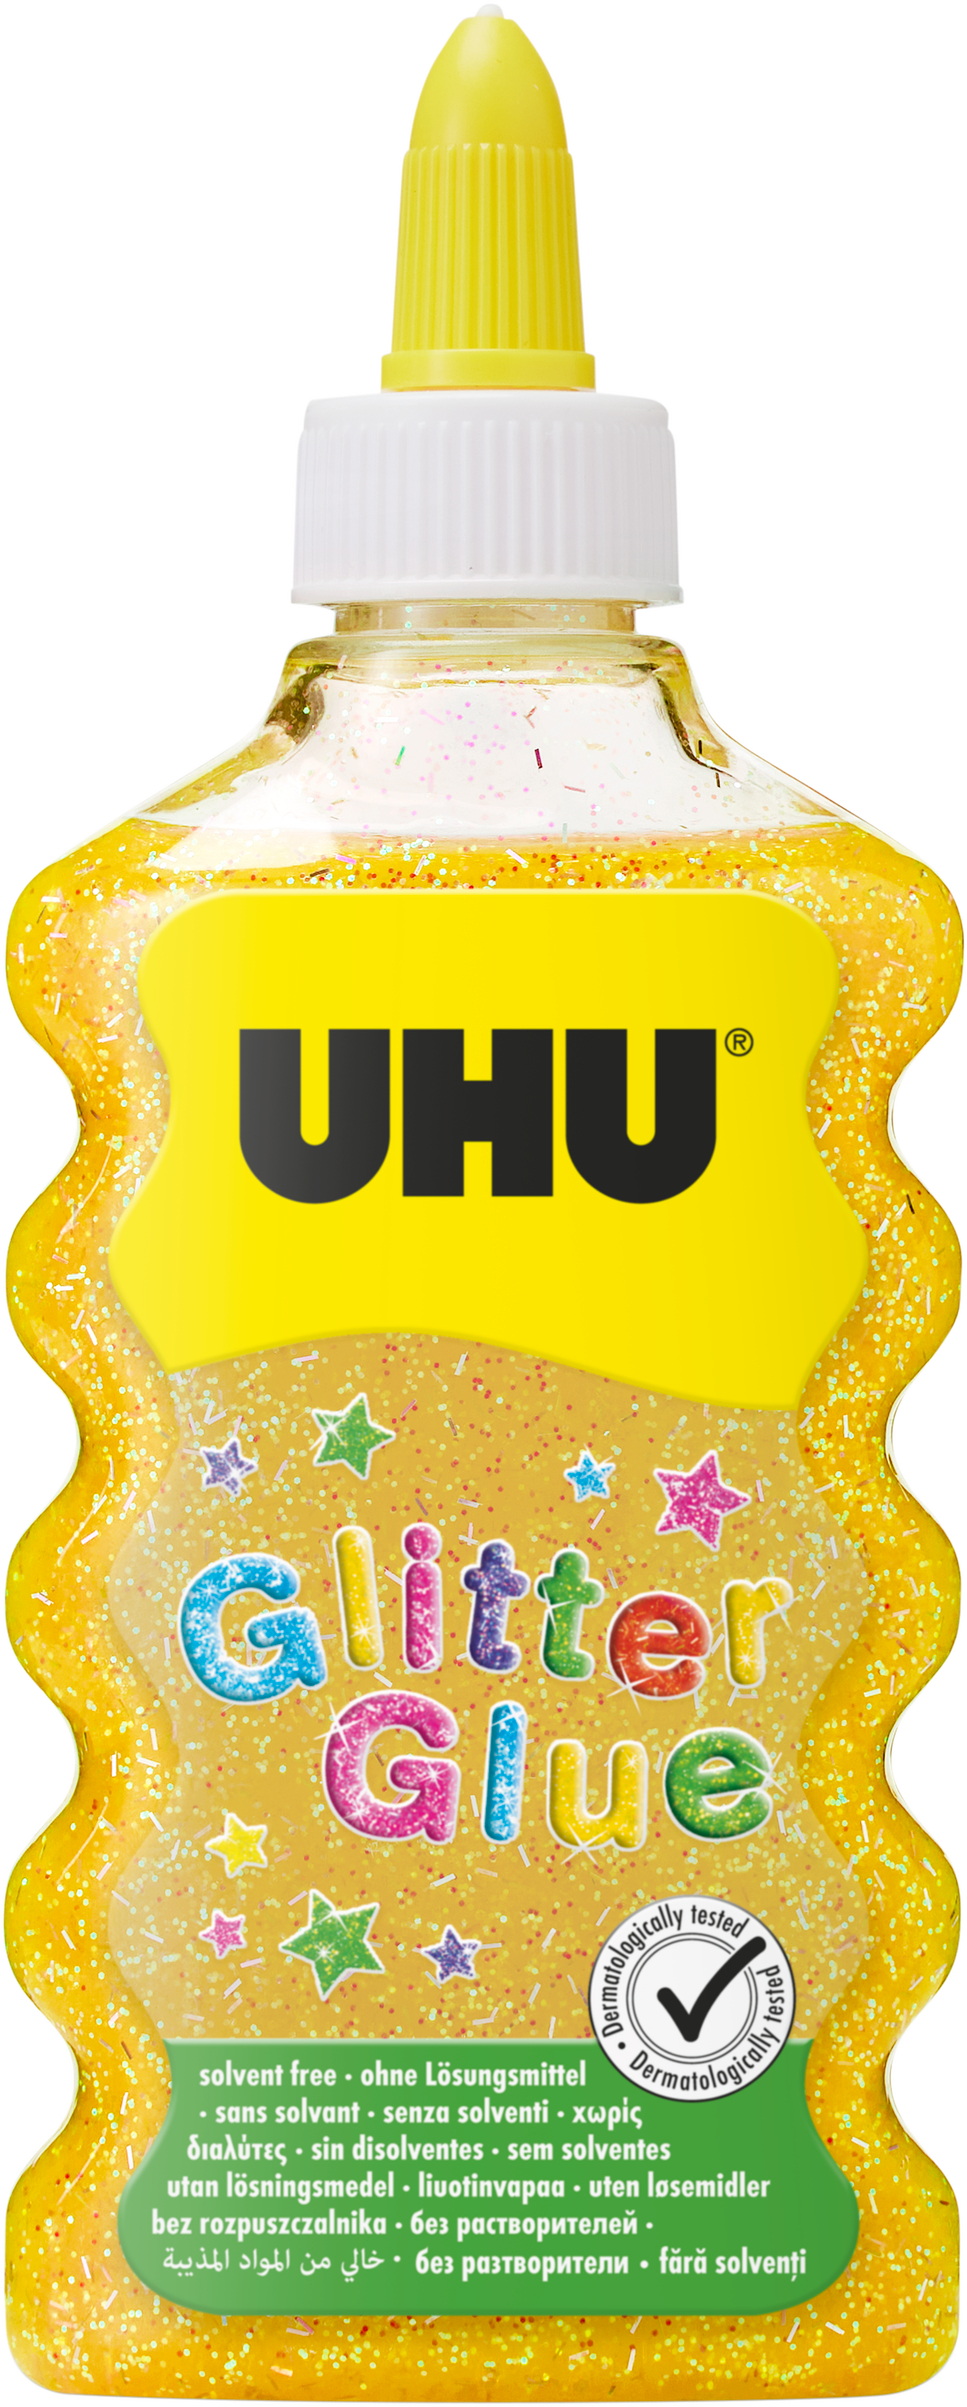 UHU Glitter Glue Maxi 510568 or, 185g